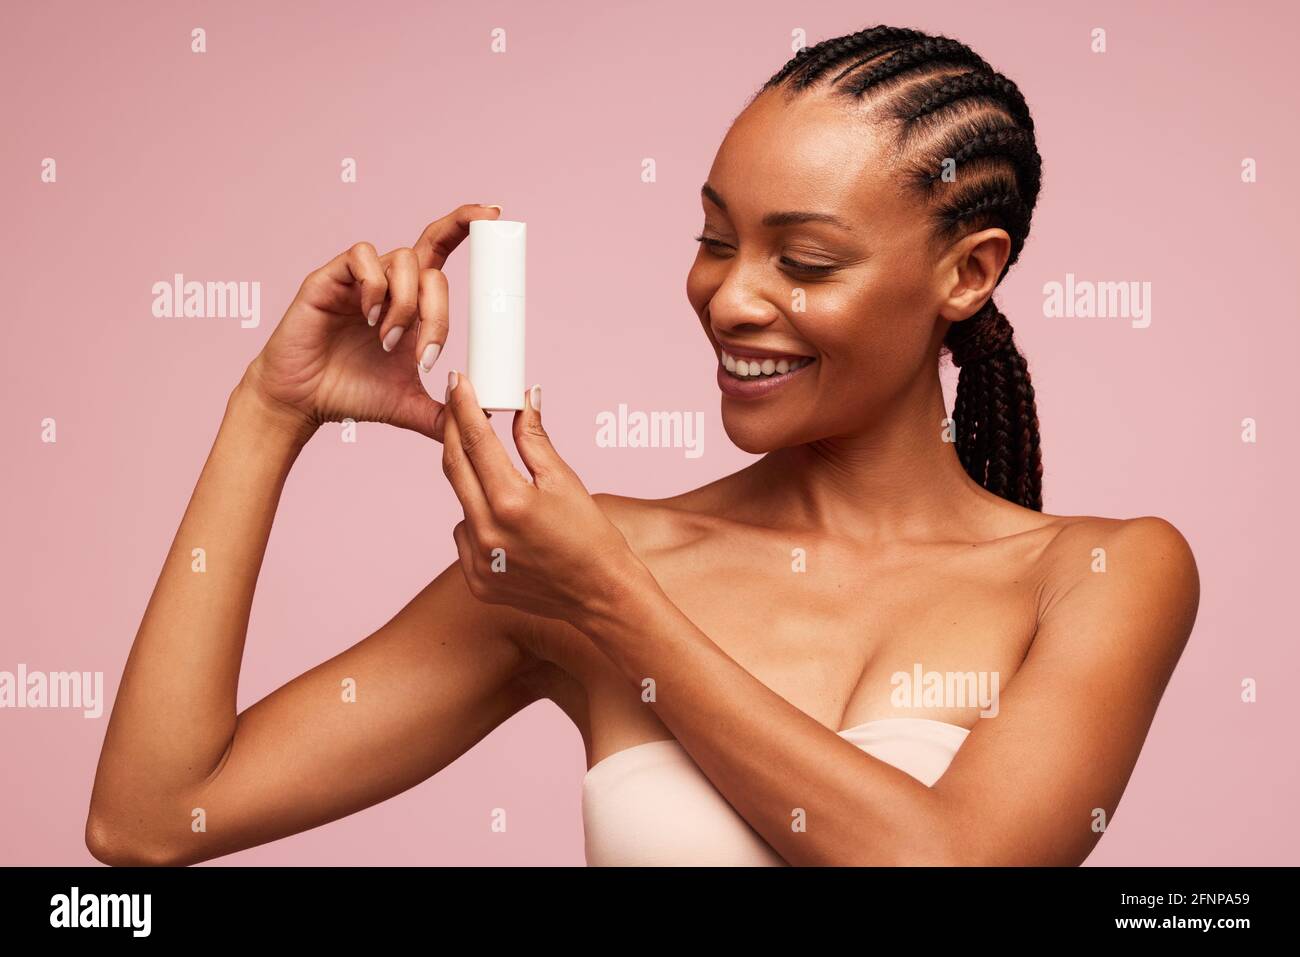 Glückliche afrikanische Frau mit einem kosmetischen Produkt. Weibliches Modell mit schöner Haut, die ein Hautpflegeprodukt zeigt. Stockfoto